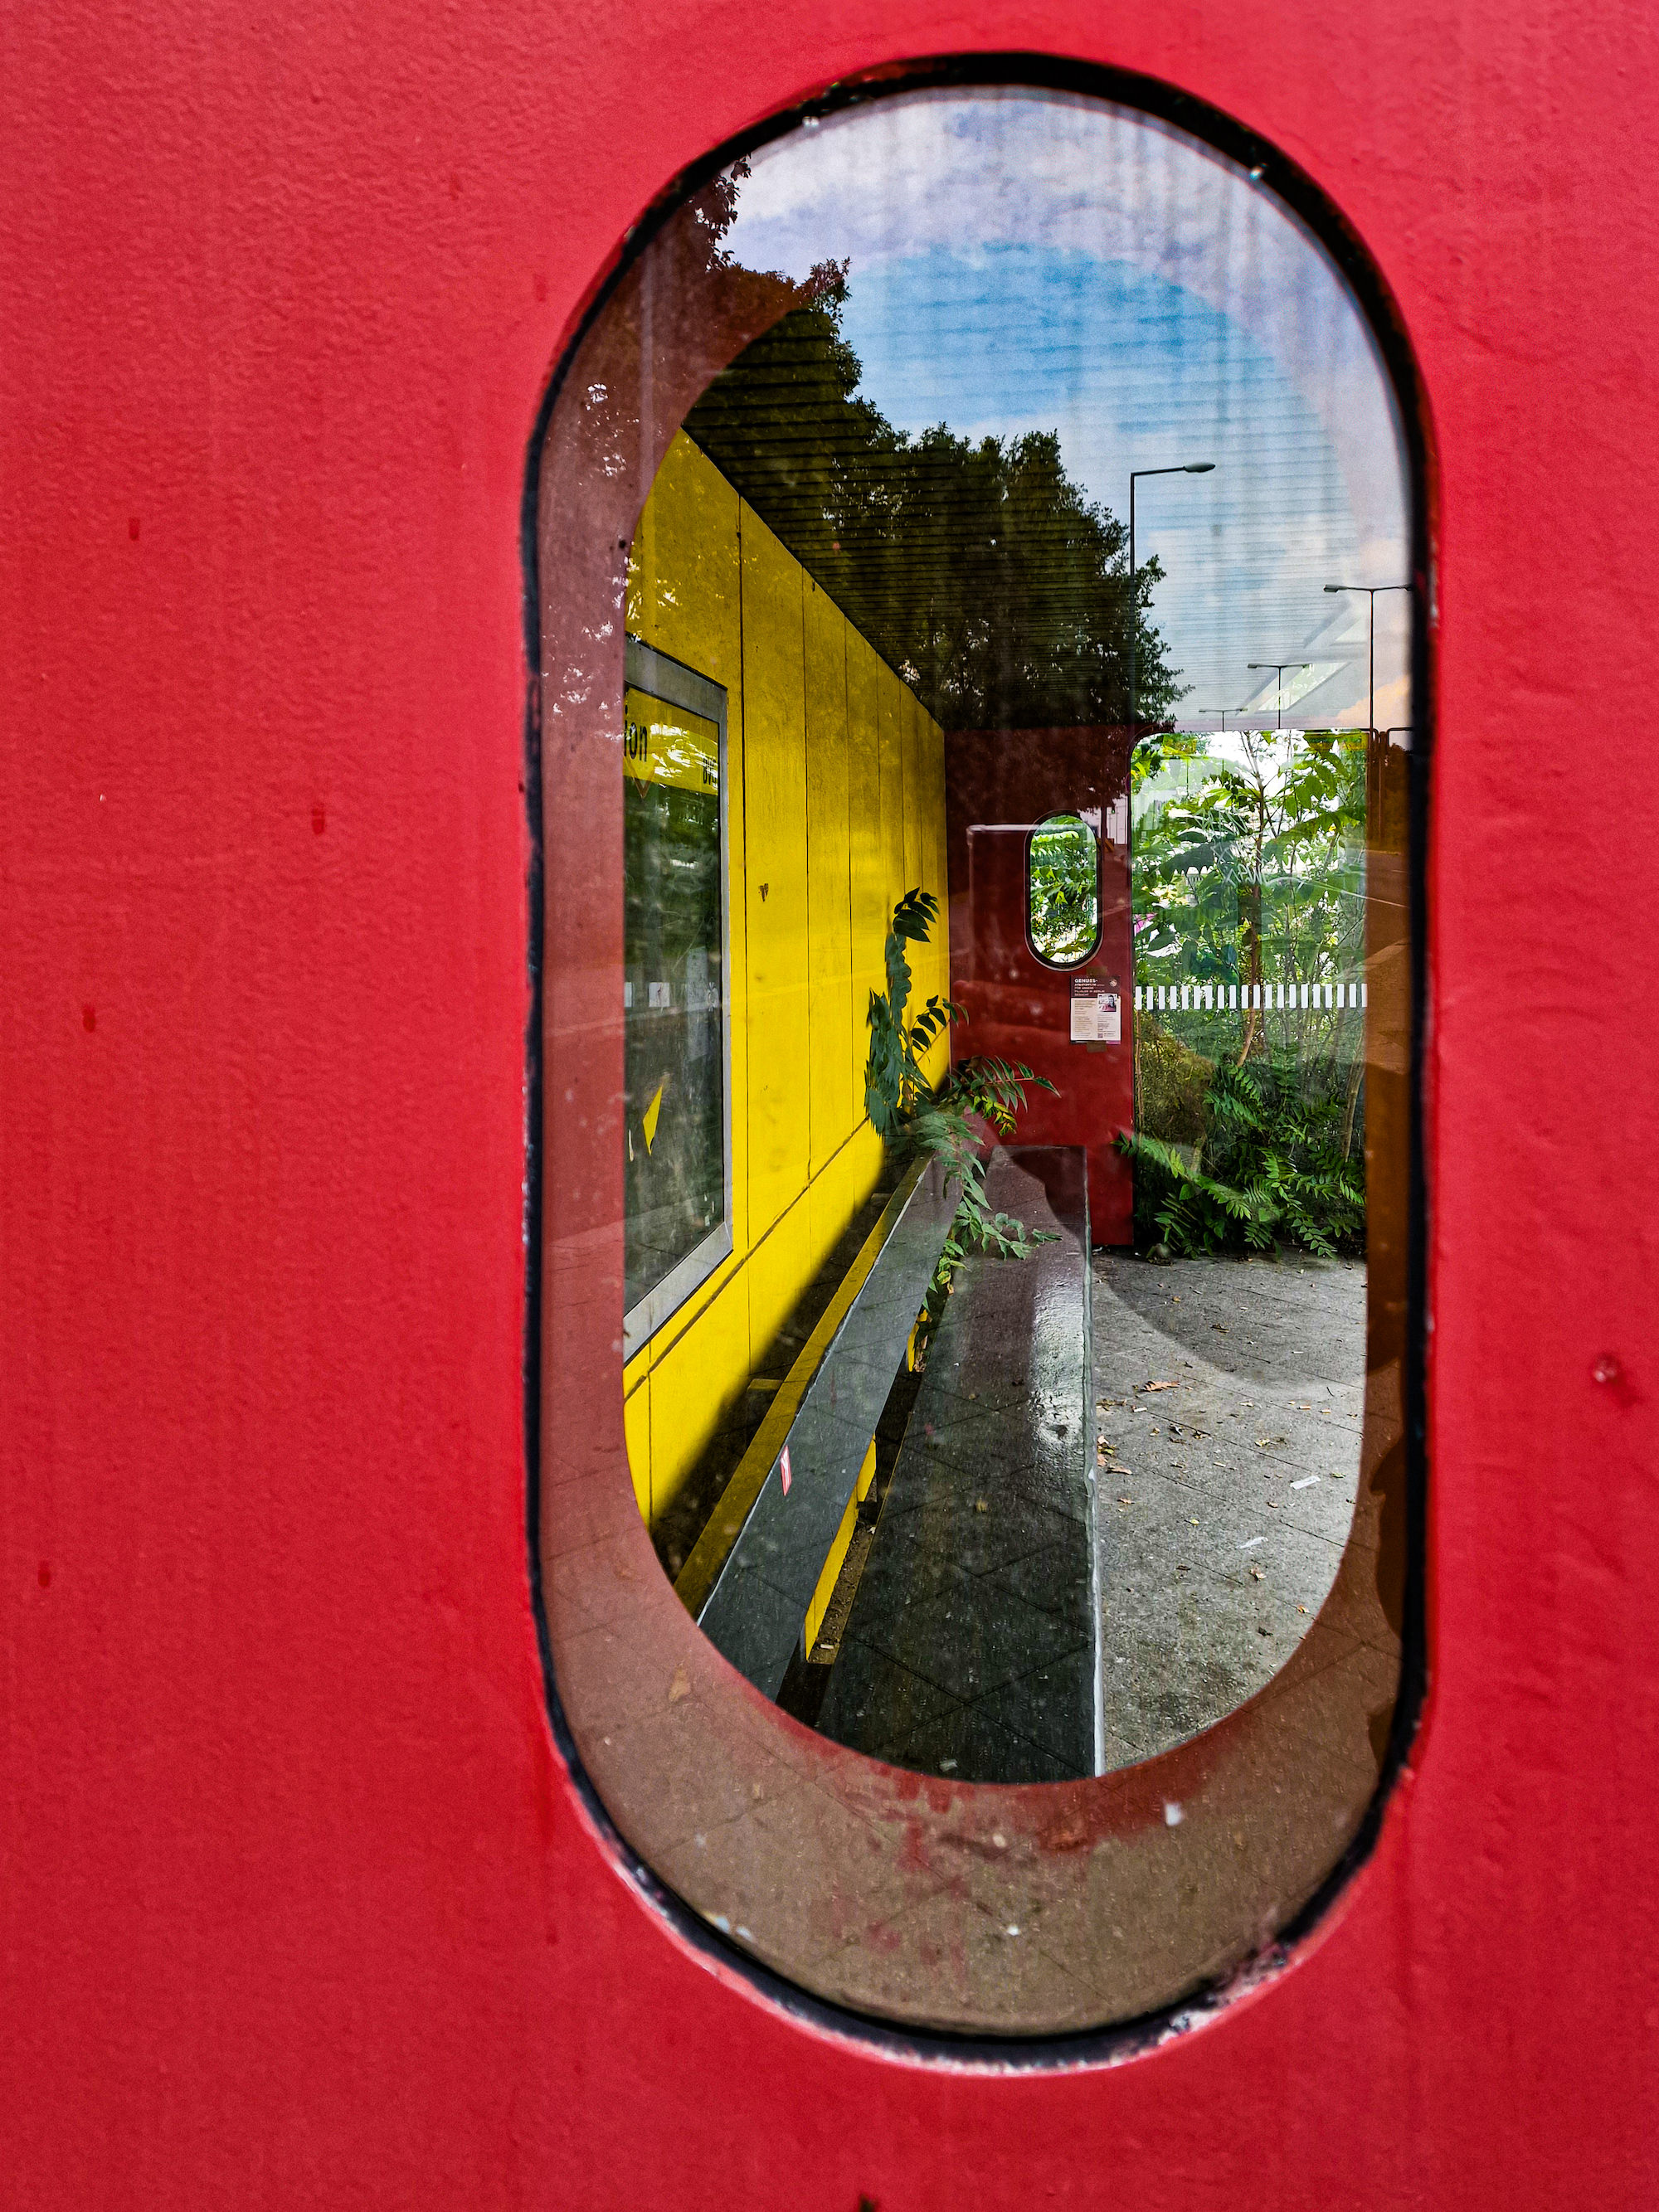 Bushaltestelle durch das Seitenfenster